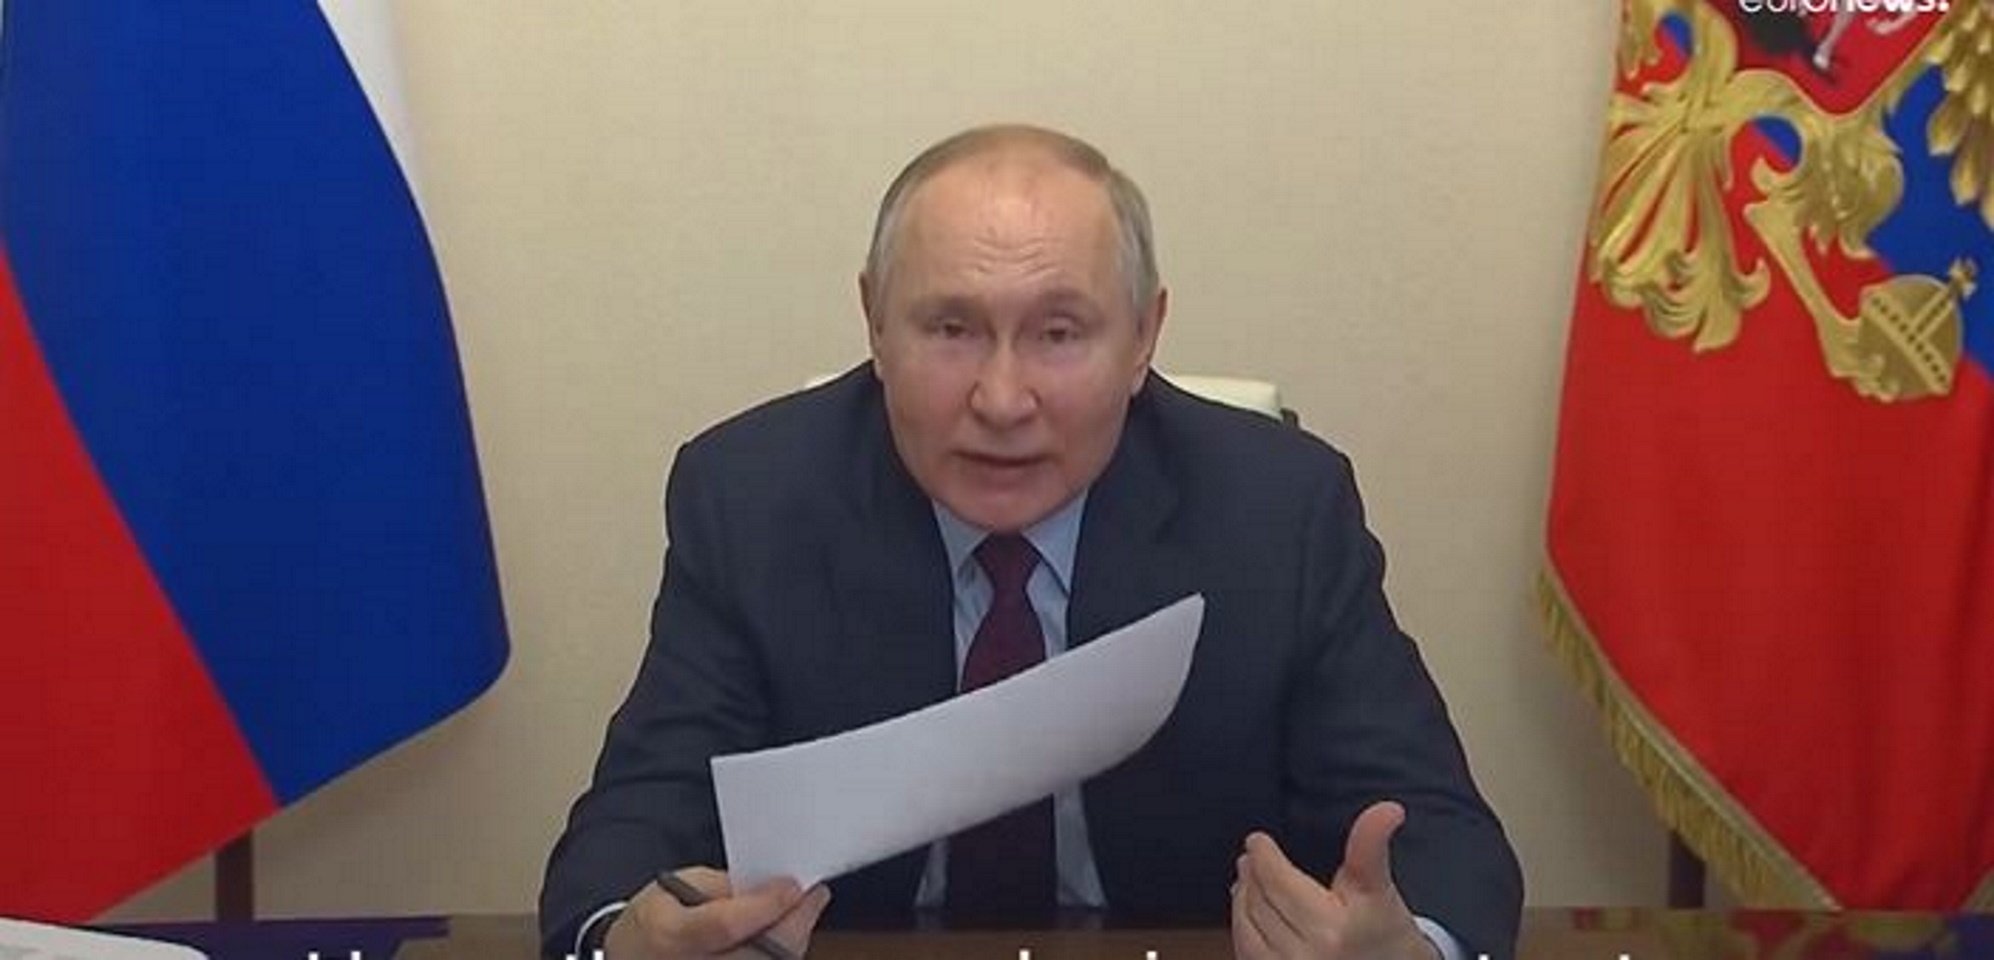 Putin perd els papers i esbronca un ministre: "Per què et fas el boig?"